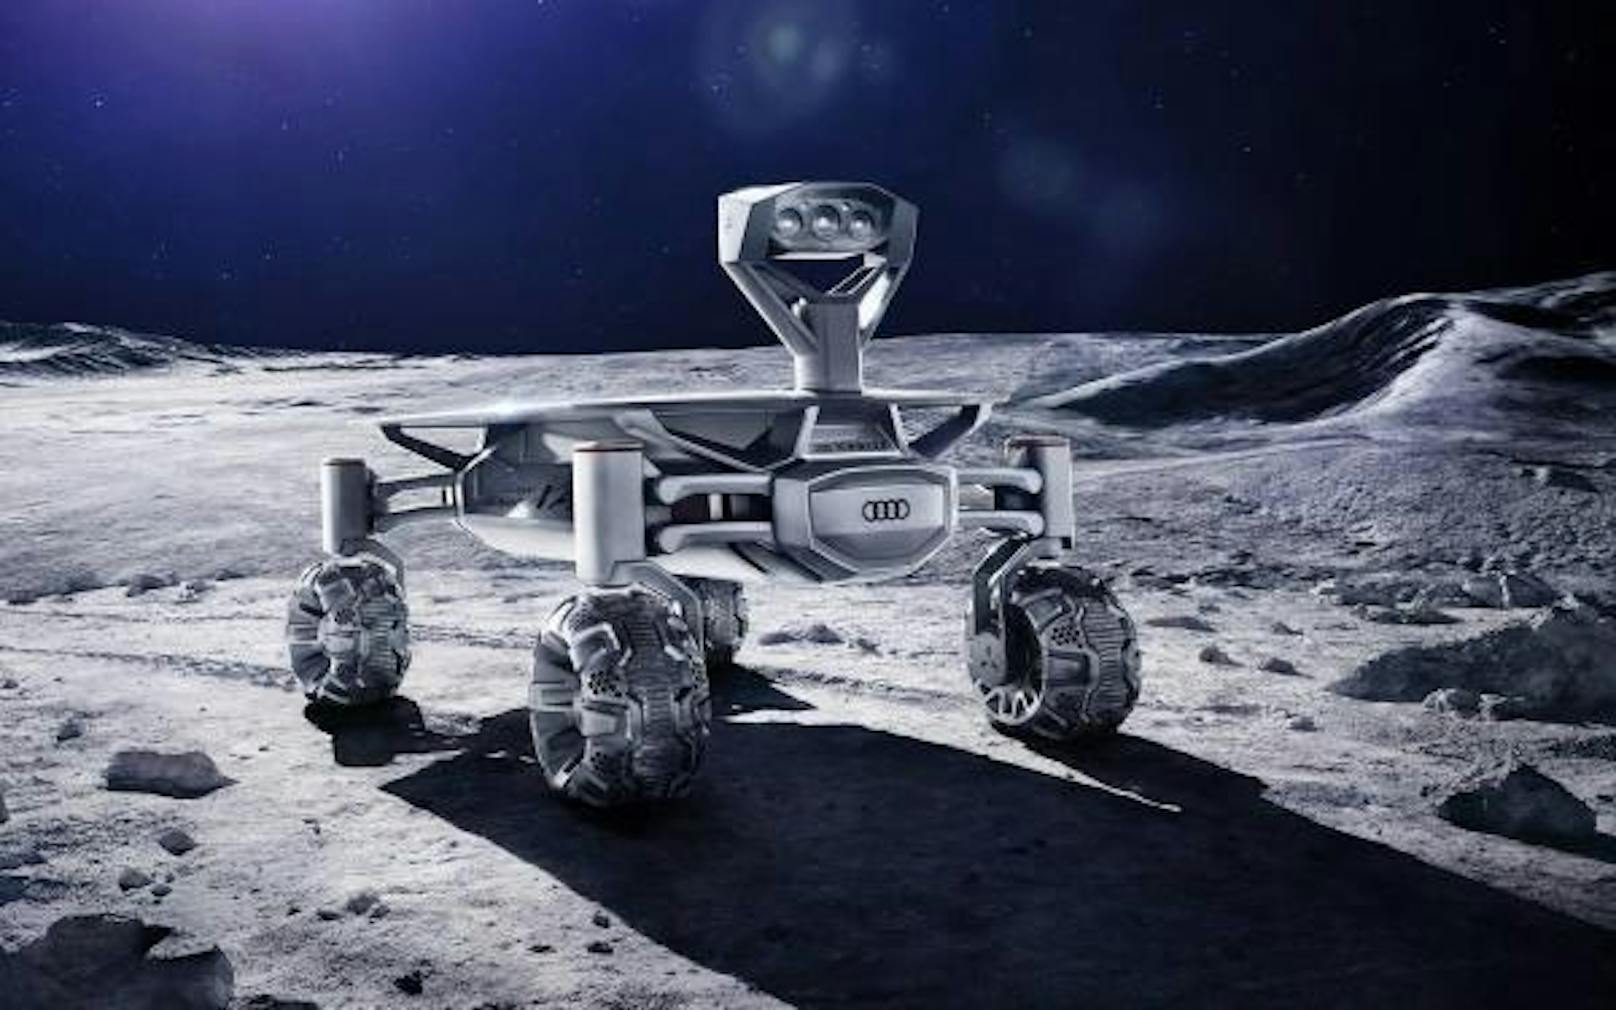 Nokia und Audi wollen zusammen mit dem Mobilfunkanbieter Vodafone auf dem Mond ein 4G-Mobilfunknetz aufbauen. Das Netzwerk soll zwei künftigen Mond-Rovern helfen, Energie zu sparen. Statt dass sie ihre gesammelten Daten, Videos und Fotos direkt zur Erde senden, übermitteln sie diese via 4G zuerst an eine Mond-Basisstation. Von dort können die Dateien dann gebündelt auf die Erde gestreamt werden. Die 4G-Mission soll 2019 mit einer Falcon-9-Rakete der Firma SpaceX von Cape Canaveral starten, heißt es in der Mitteilung.